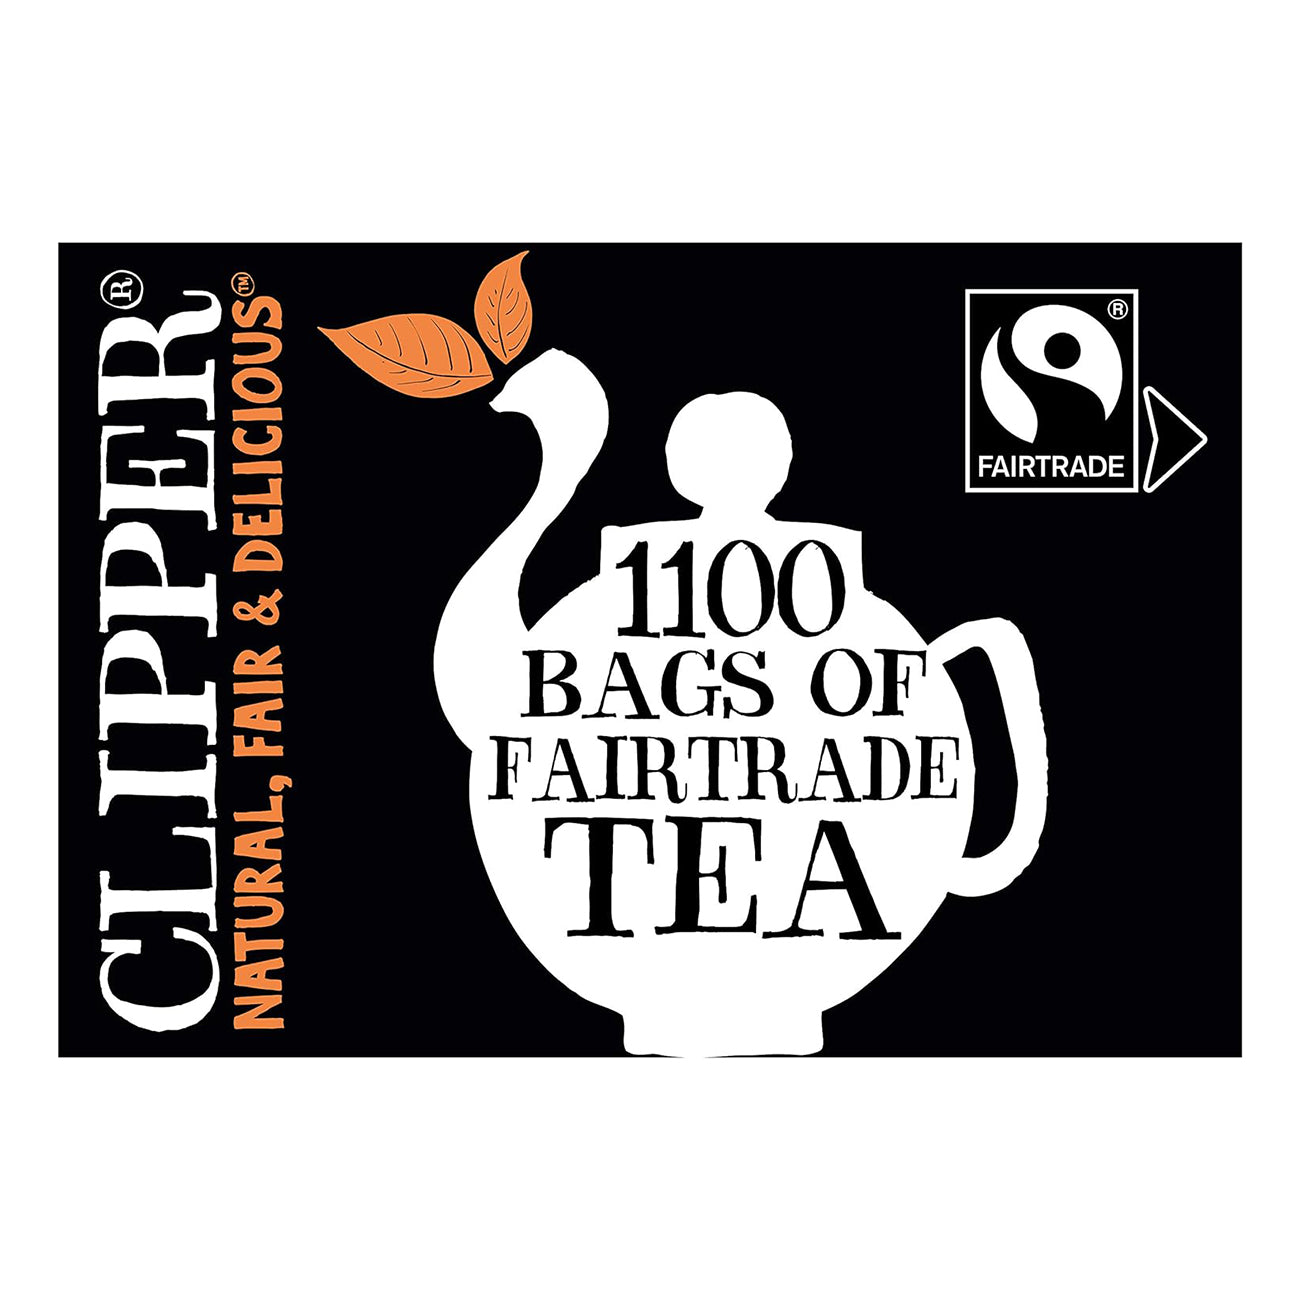 Fairtrade BlackTea Everyday 1100 bags